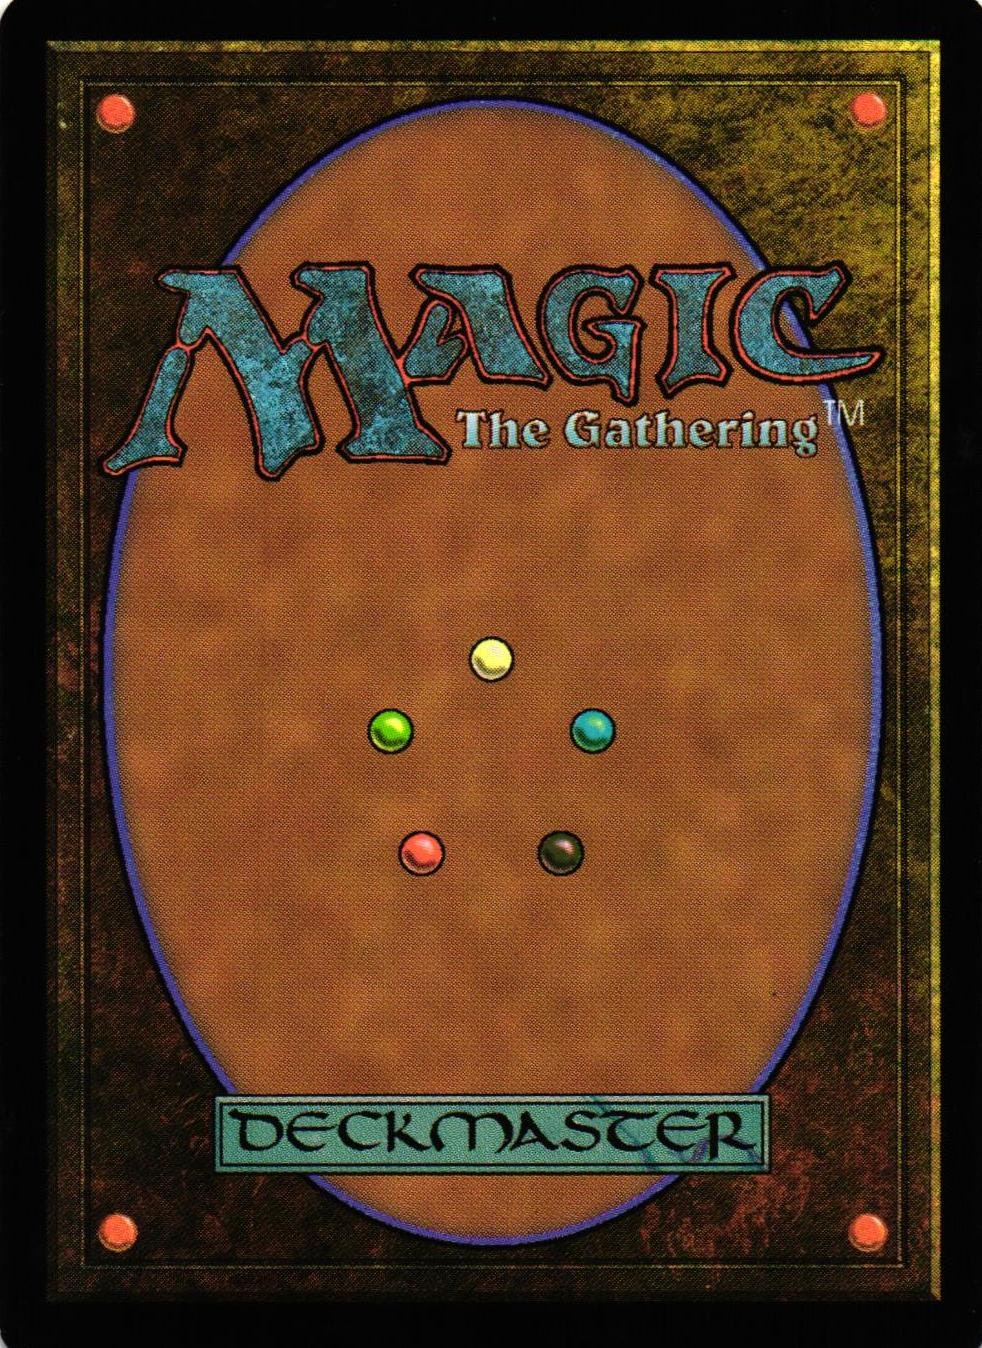 Undead Servant Common 124/272 Magic Origins (ORI) Magic the Gathering